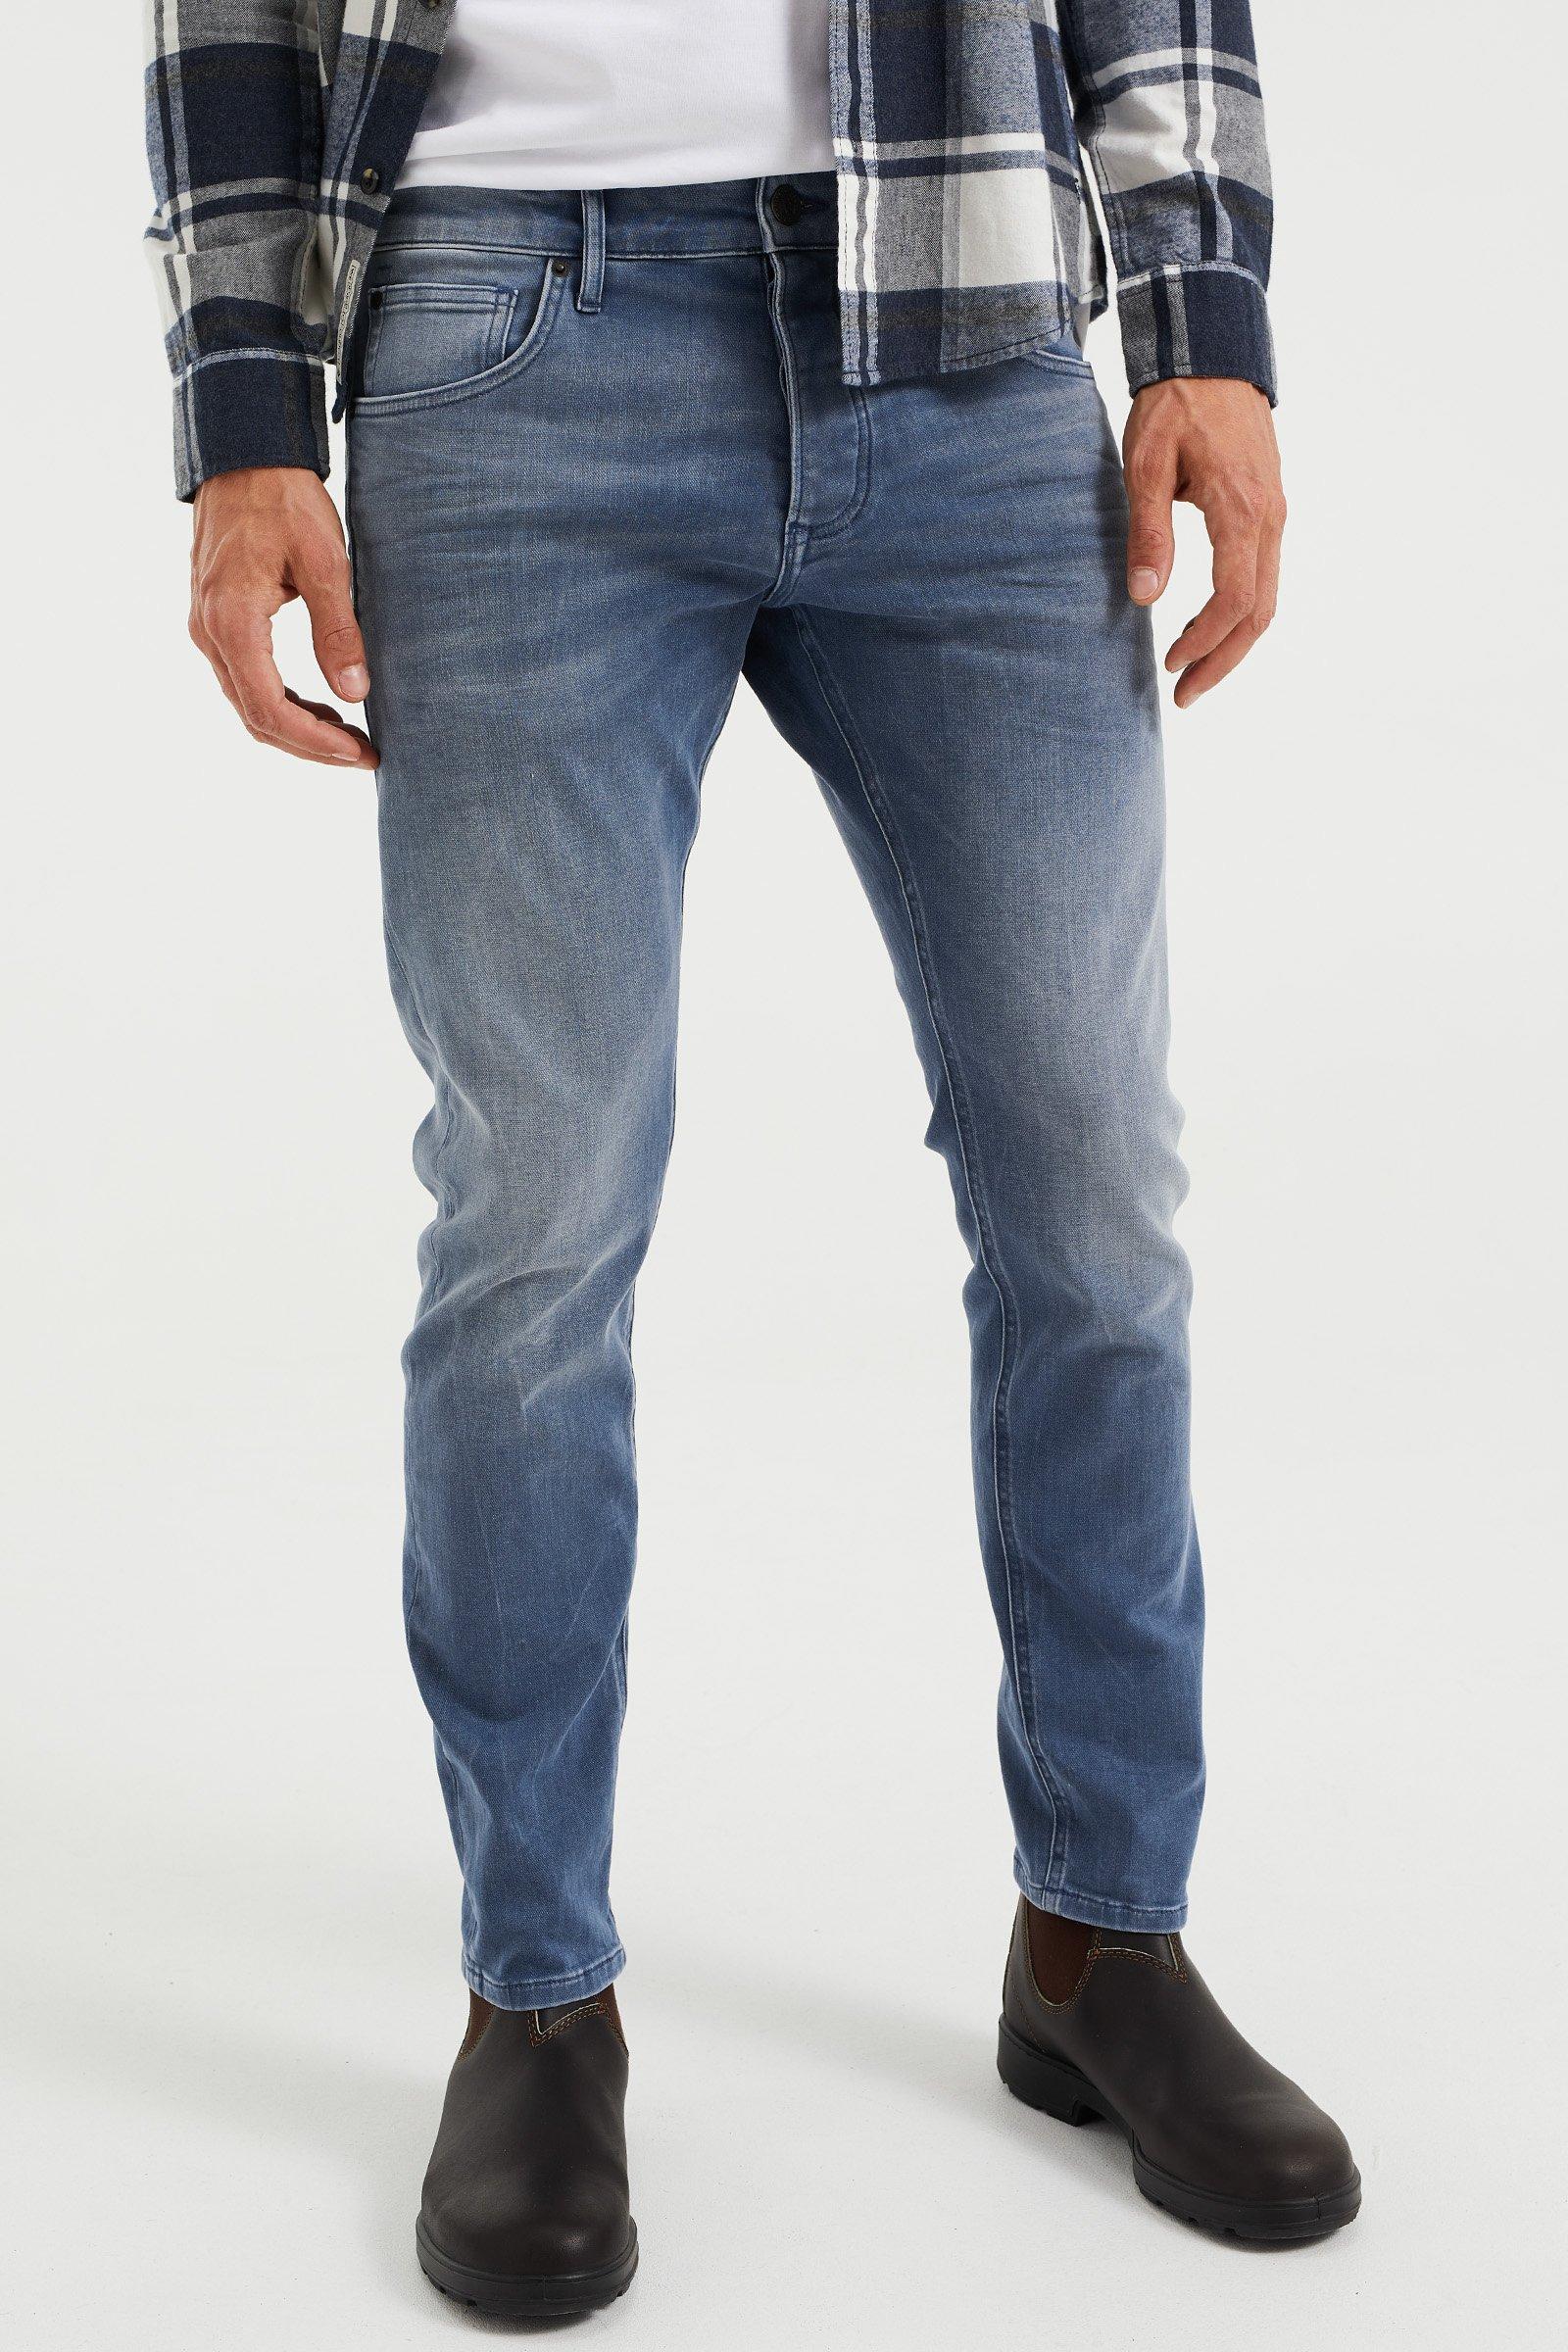 Image of WE Fashion 5-Pocket-Jeans - L34/31-34